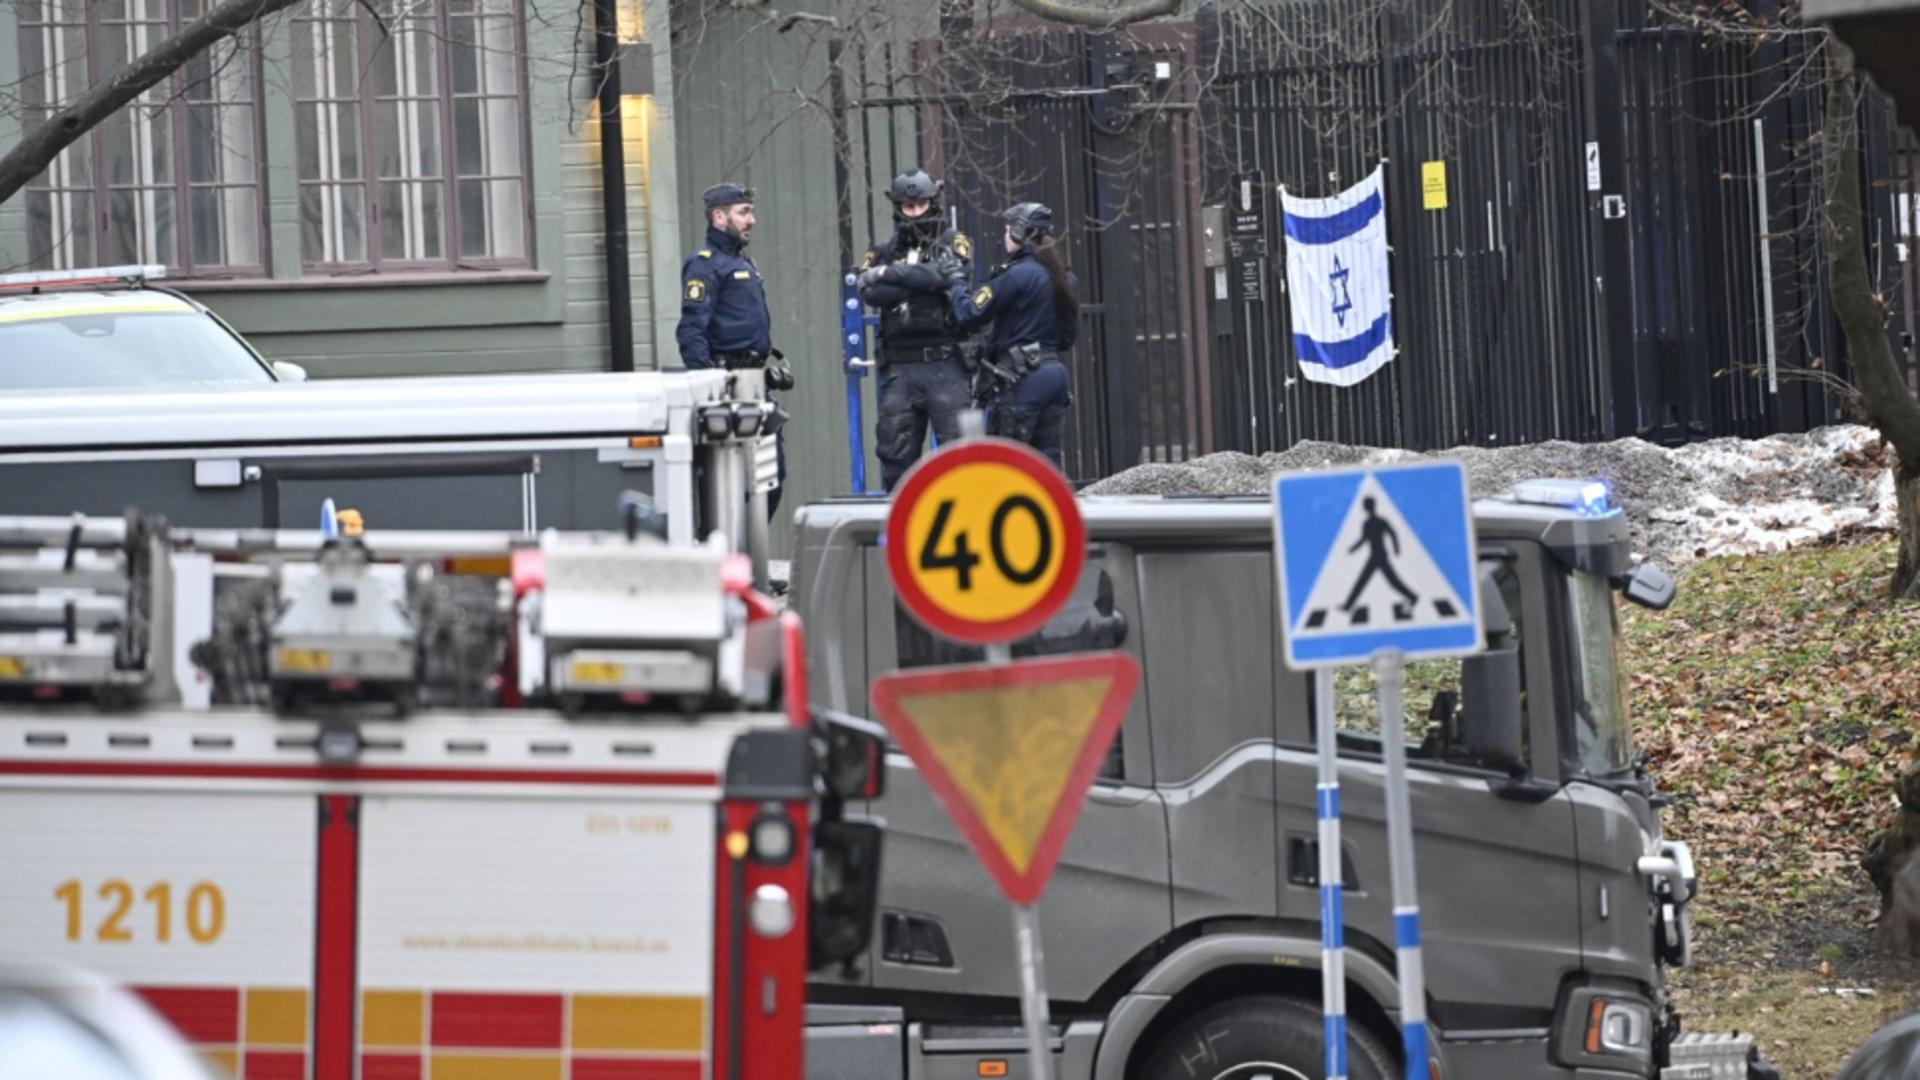 Alertă de securitate la Stockholm! Poliția a distrus un dispozitiv exploziv găsit în incinta ambasadei Israelului/ Profimedia